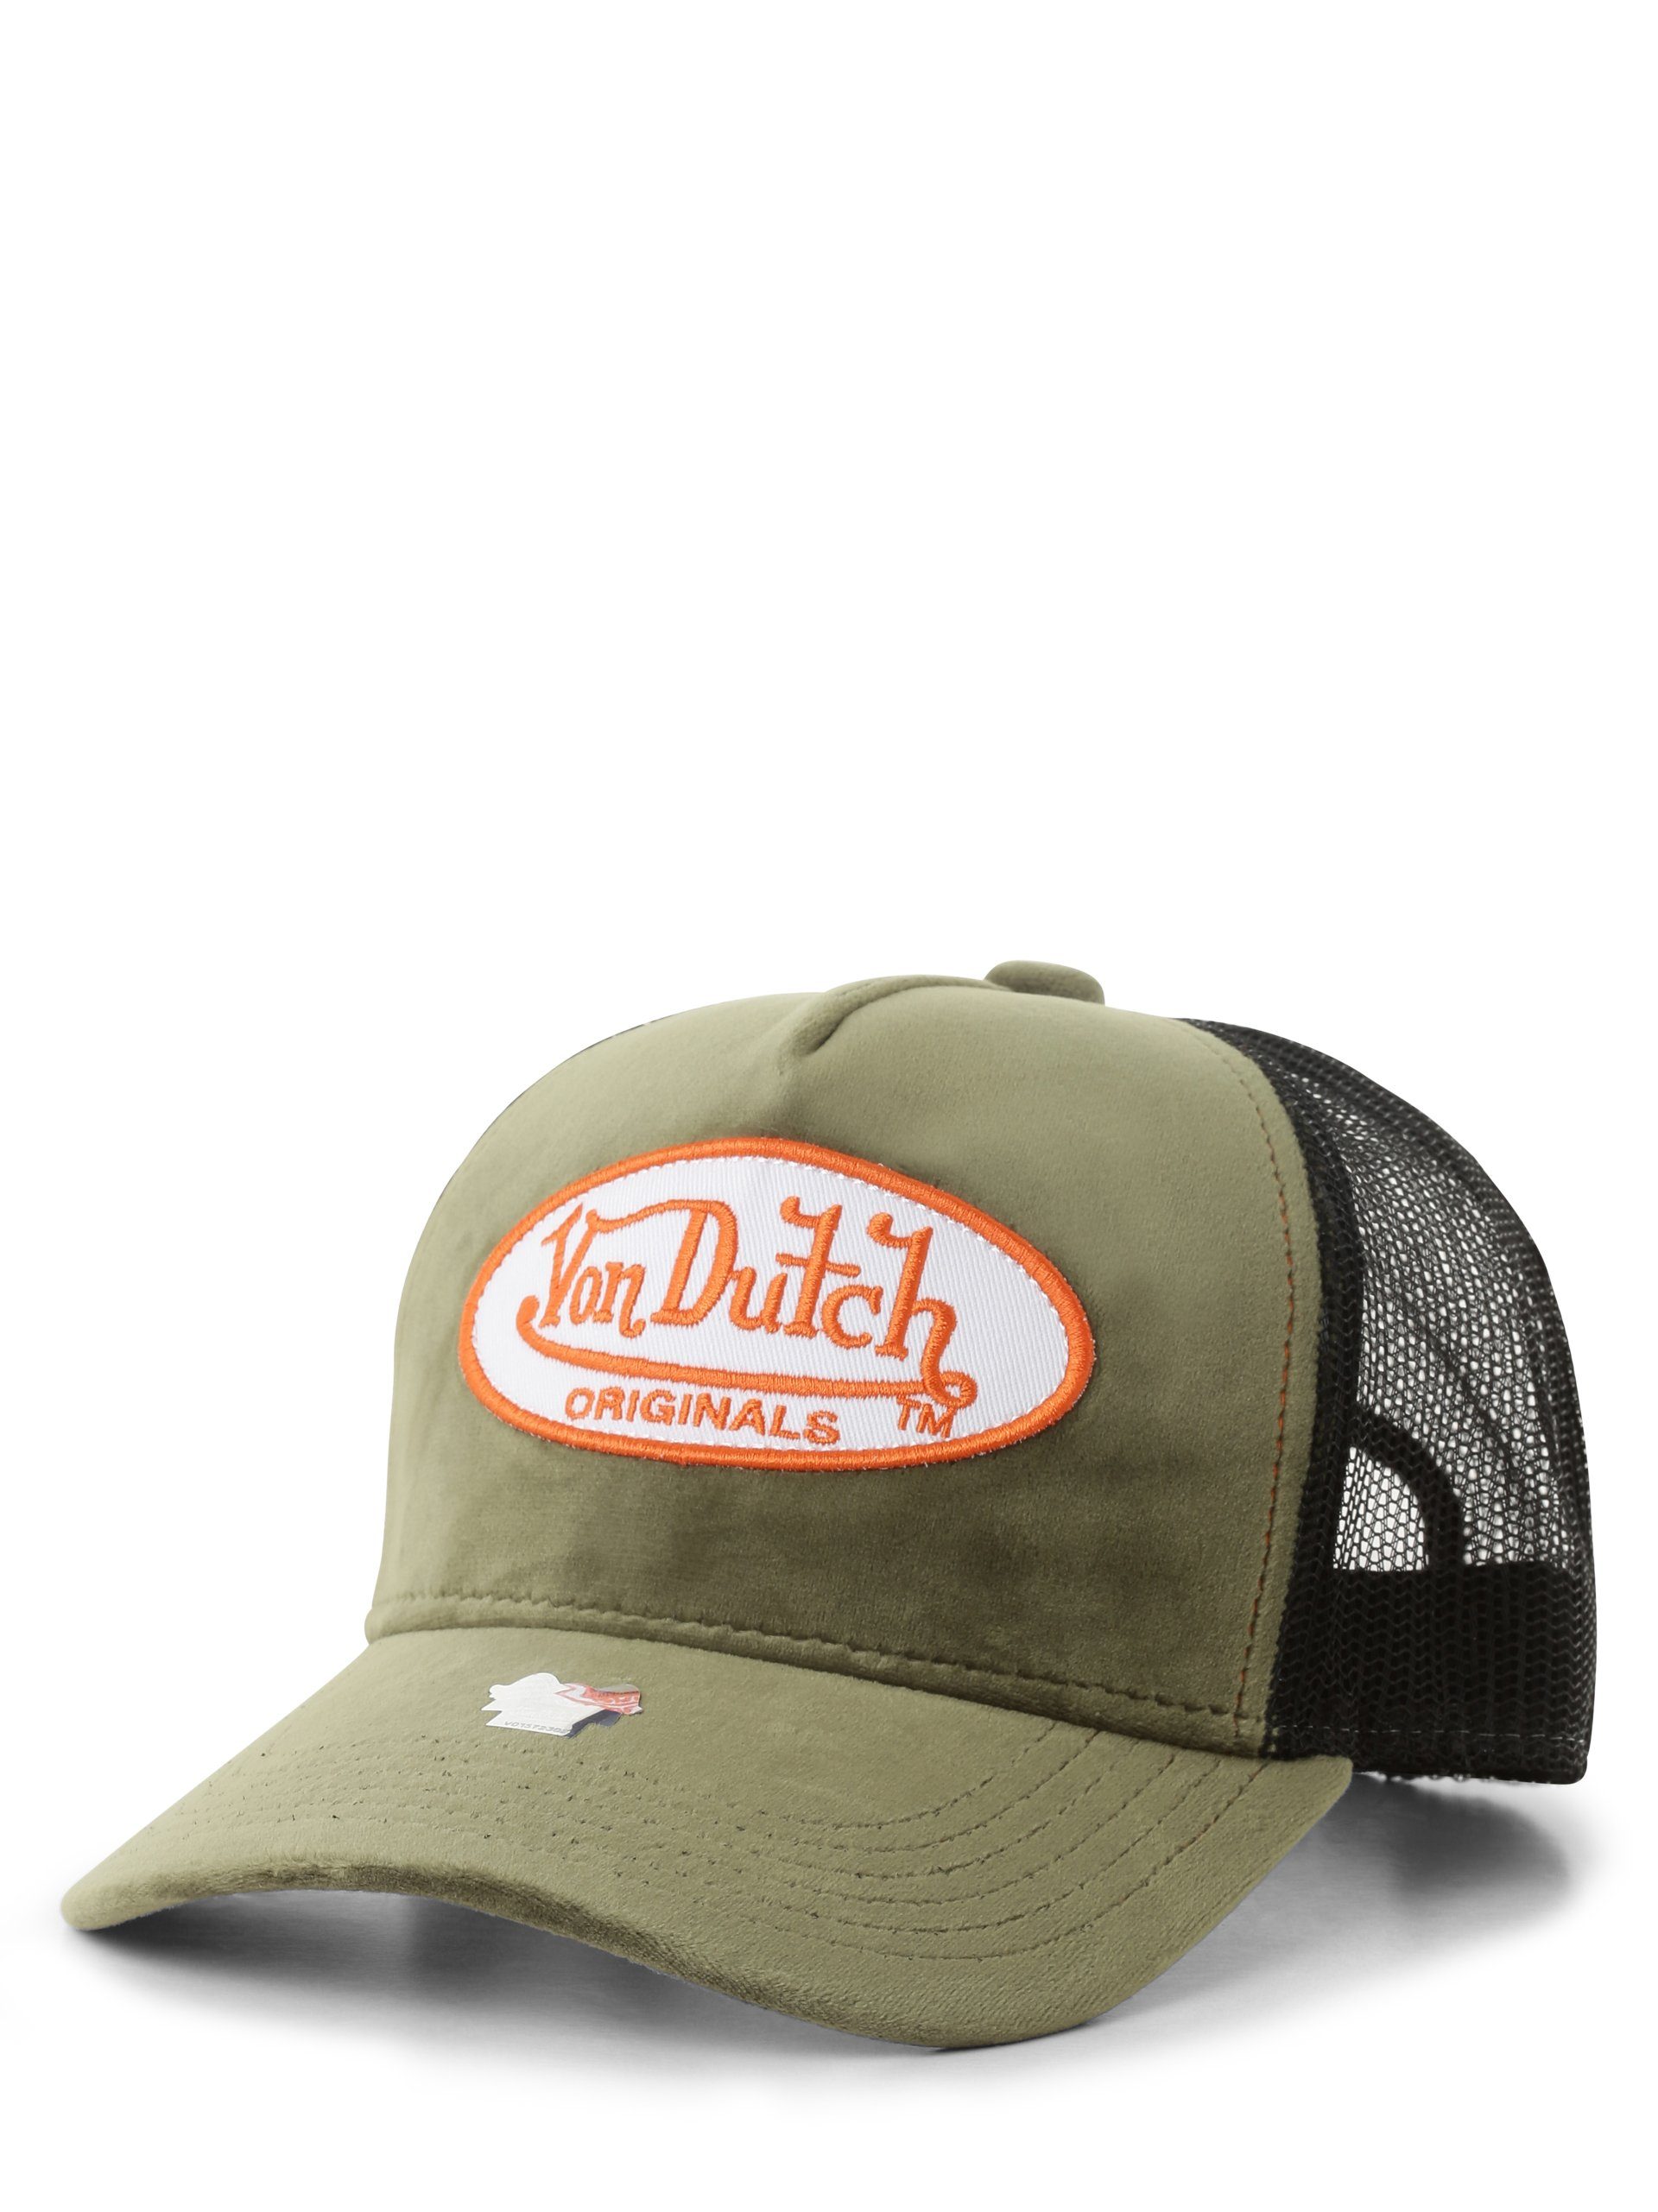 Von Dutch Baseball Cap Kent | Trucker Caps